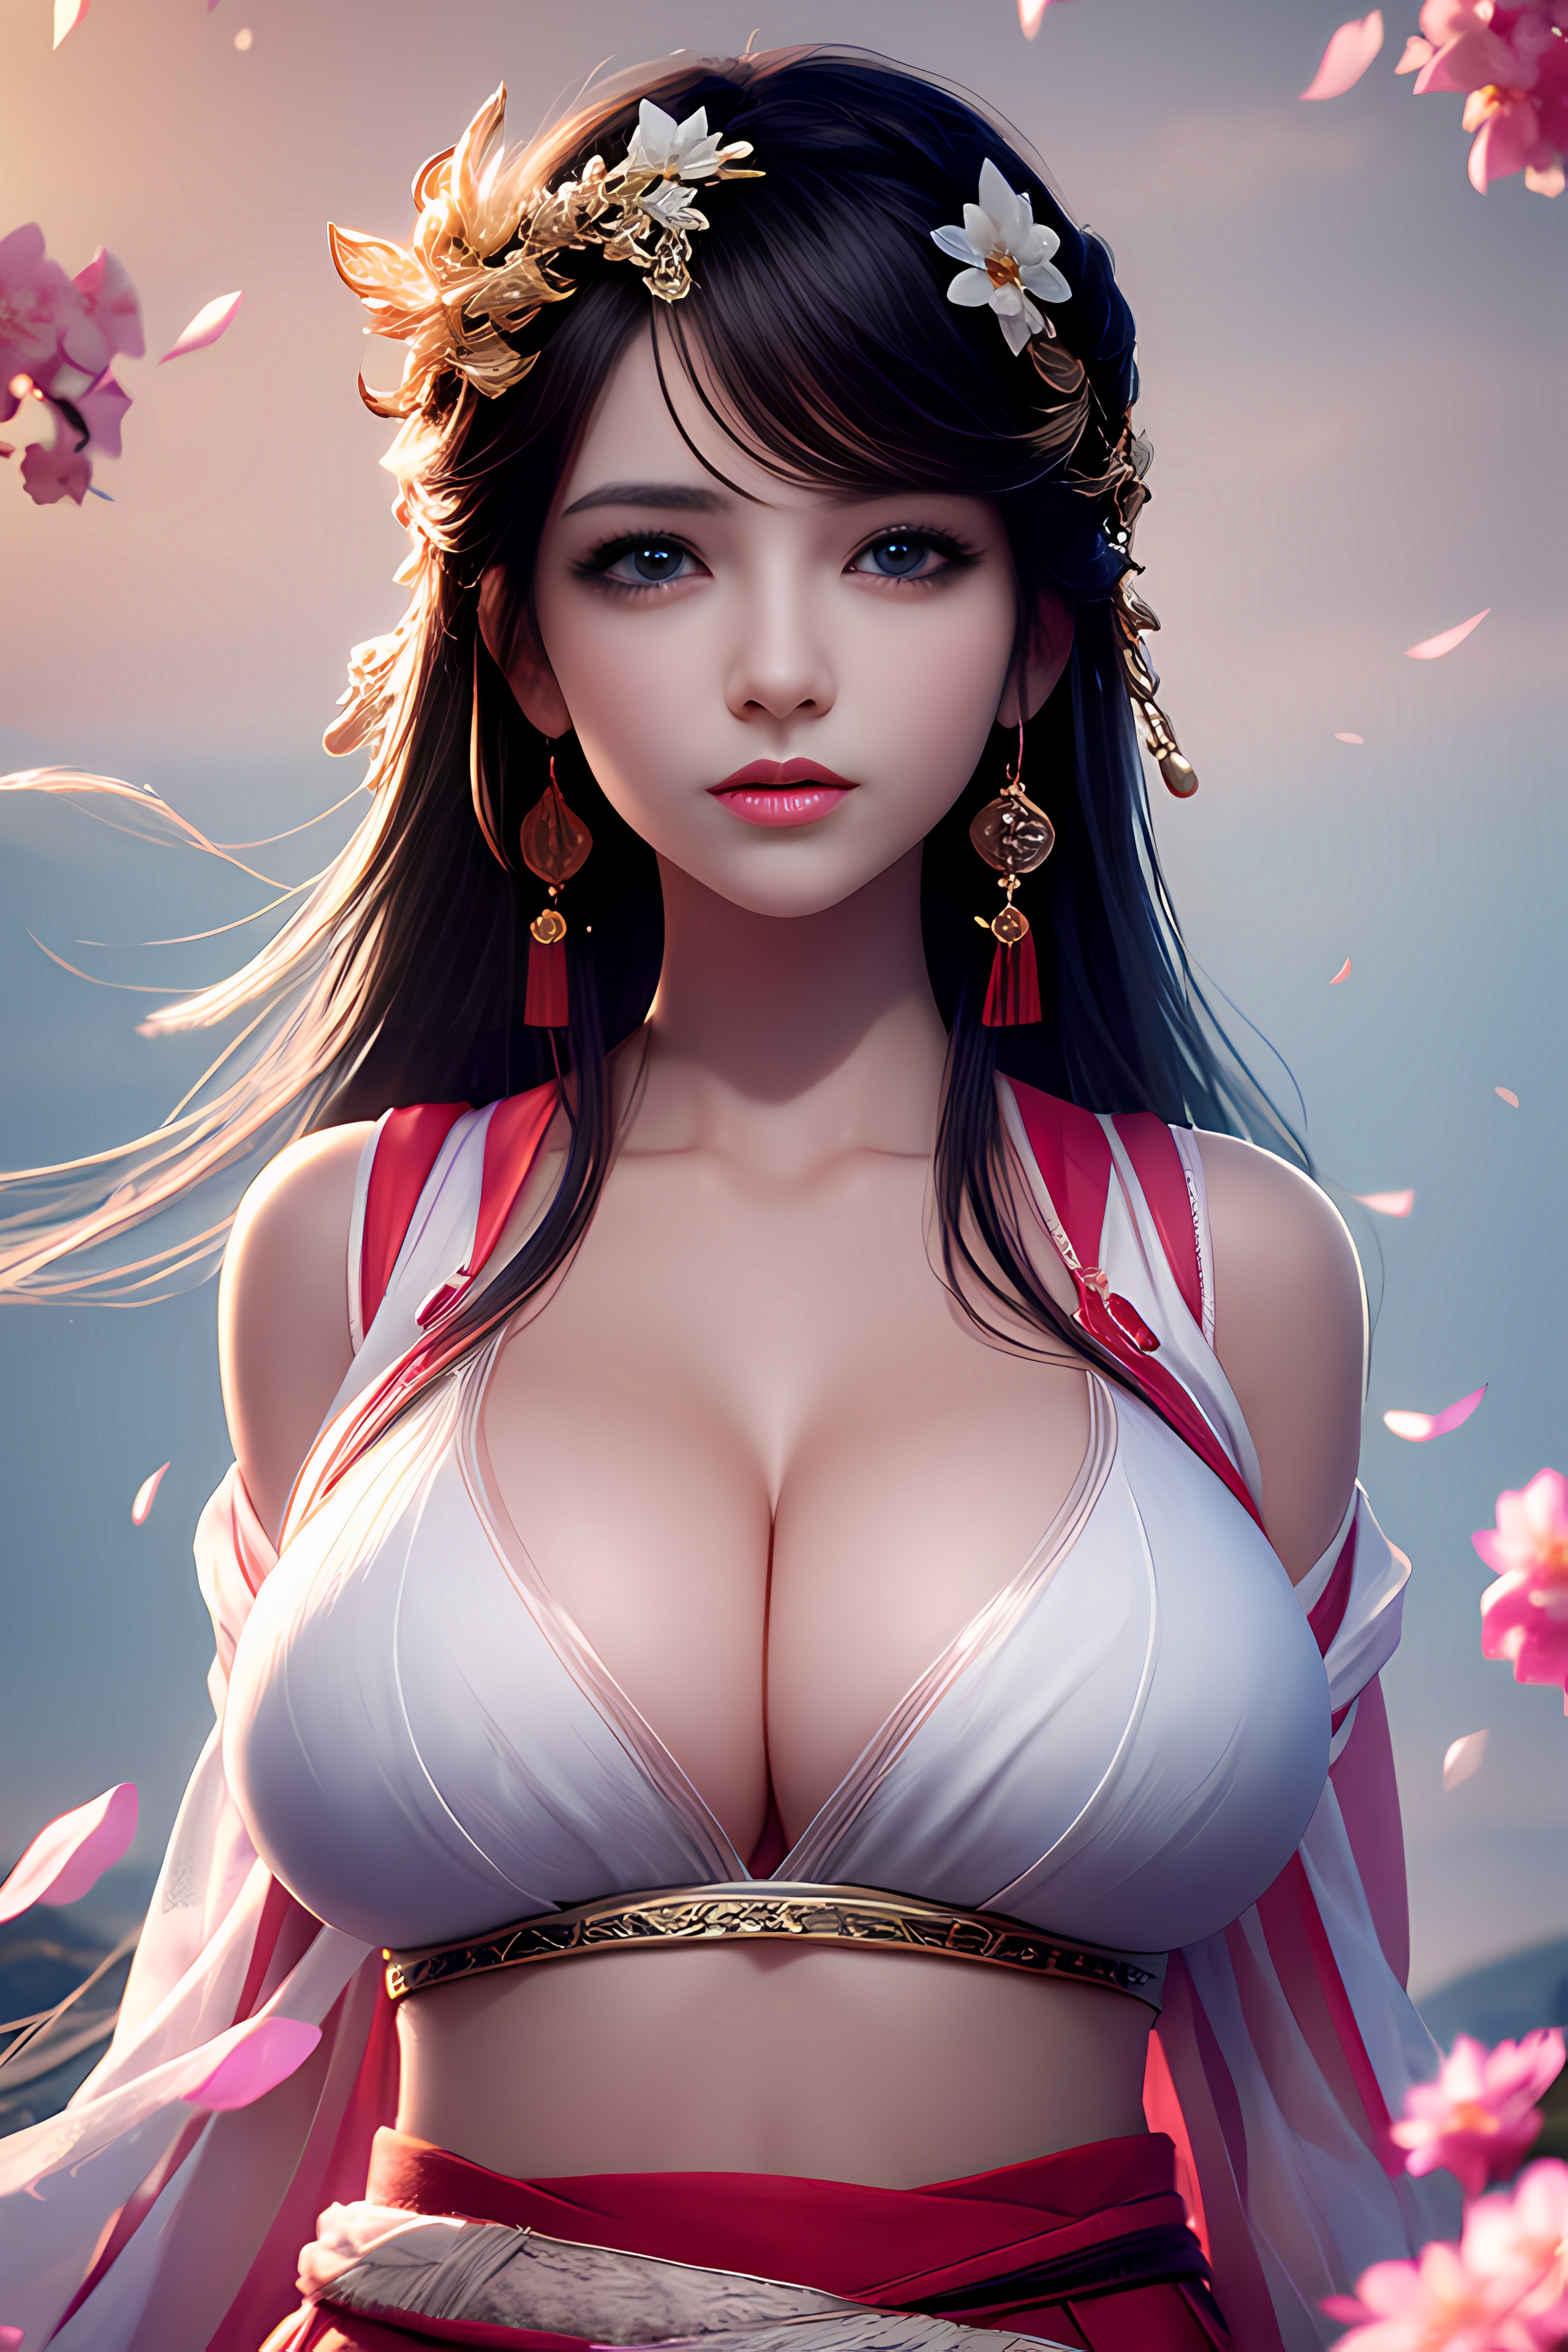 大乳房的亚洲女孩的画像